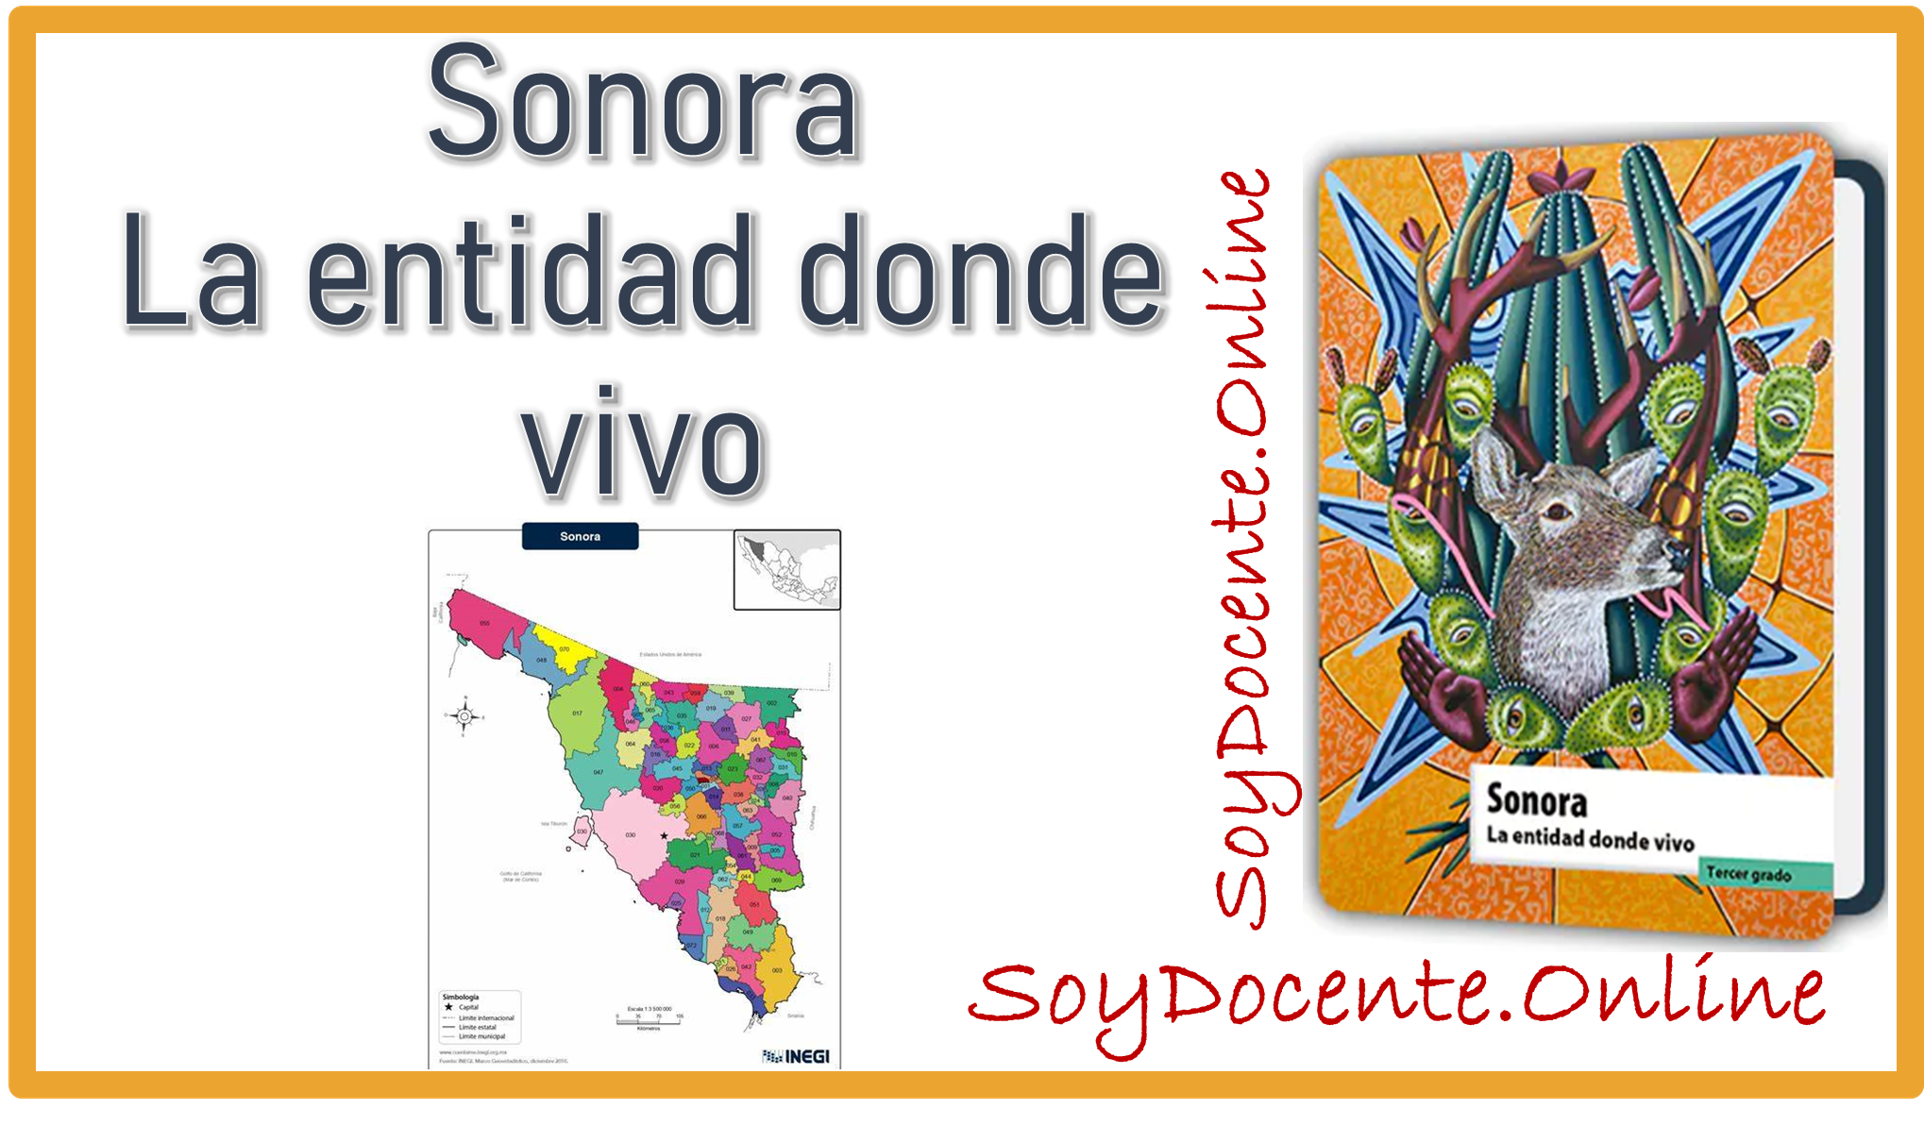 Libro de Sonora La entidad donde vivo tercer grado de Primaria, por la SEP, distribuido por la CONALITEG.